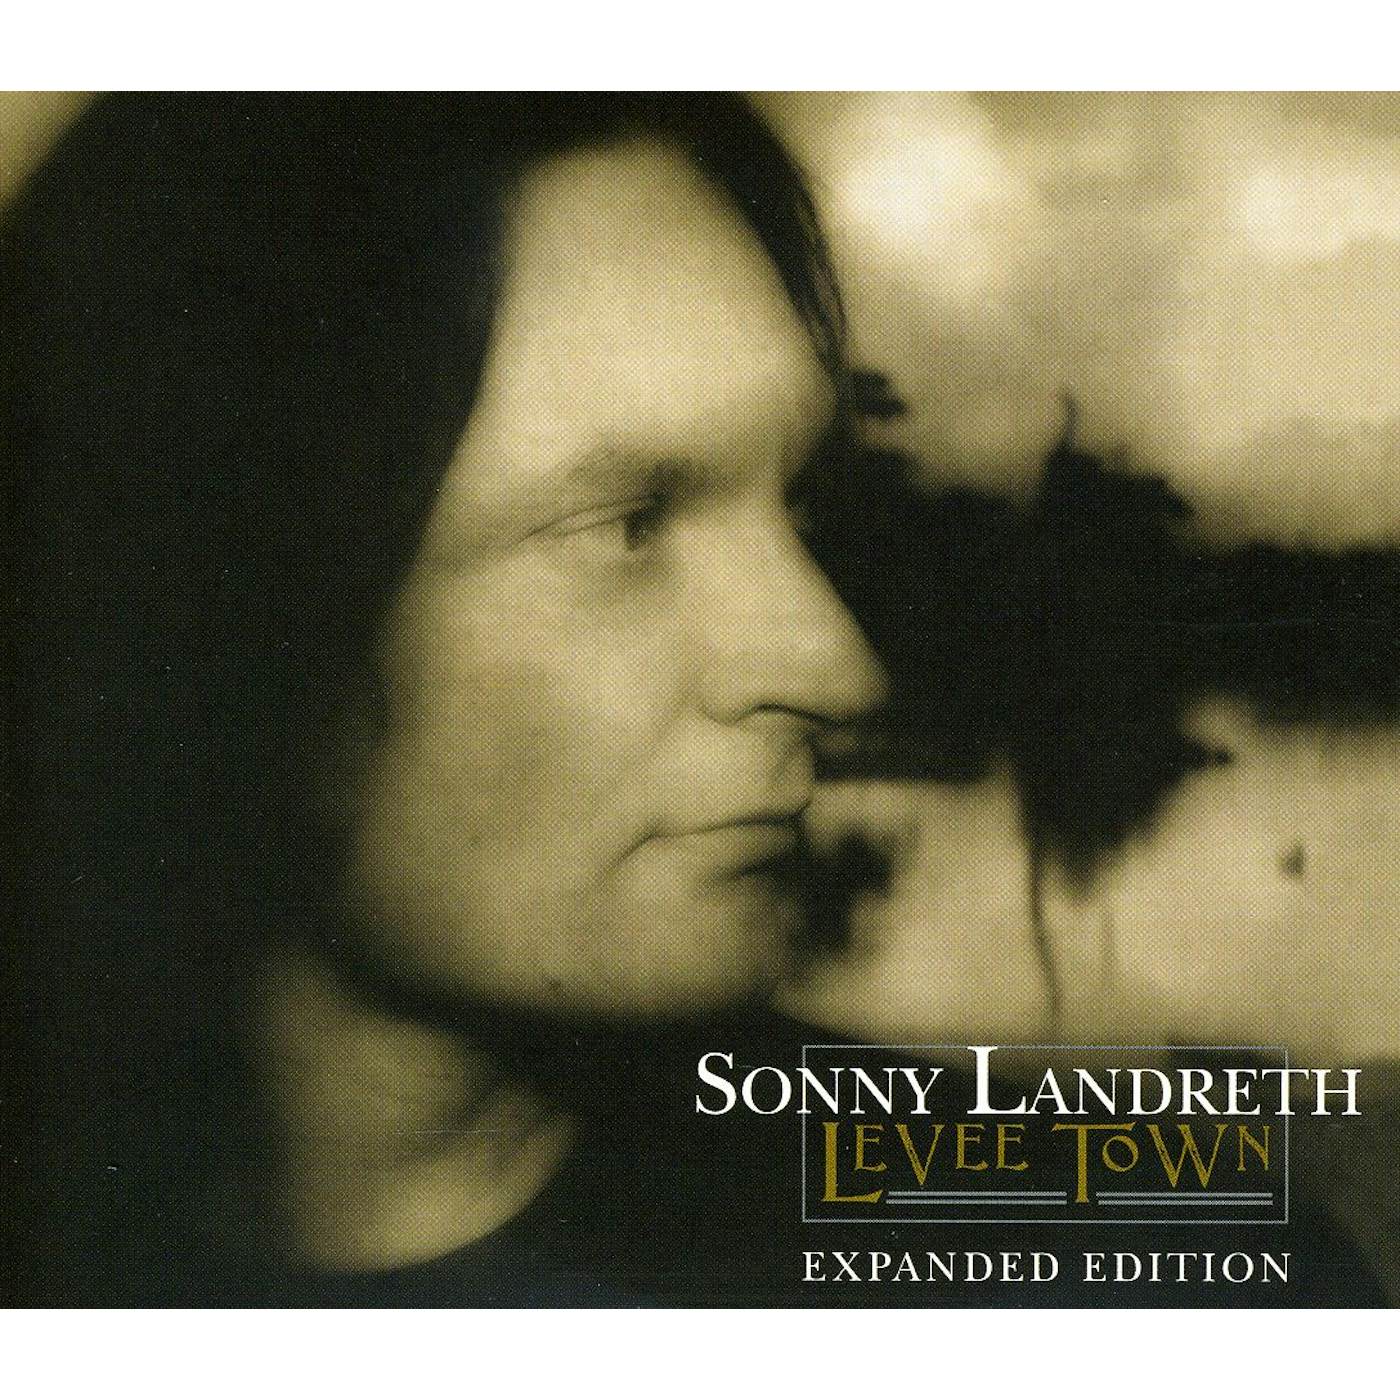 Sonny Landreth LEVEE TOWN CD